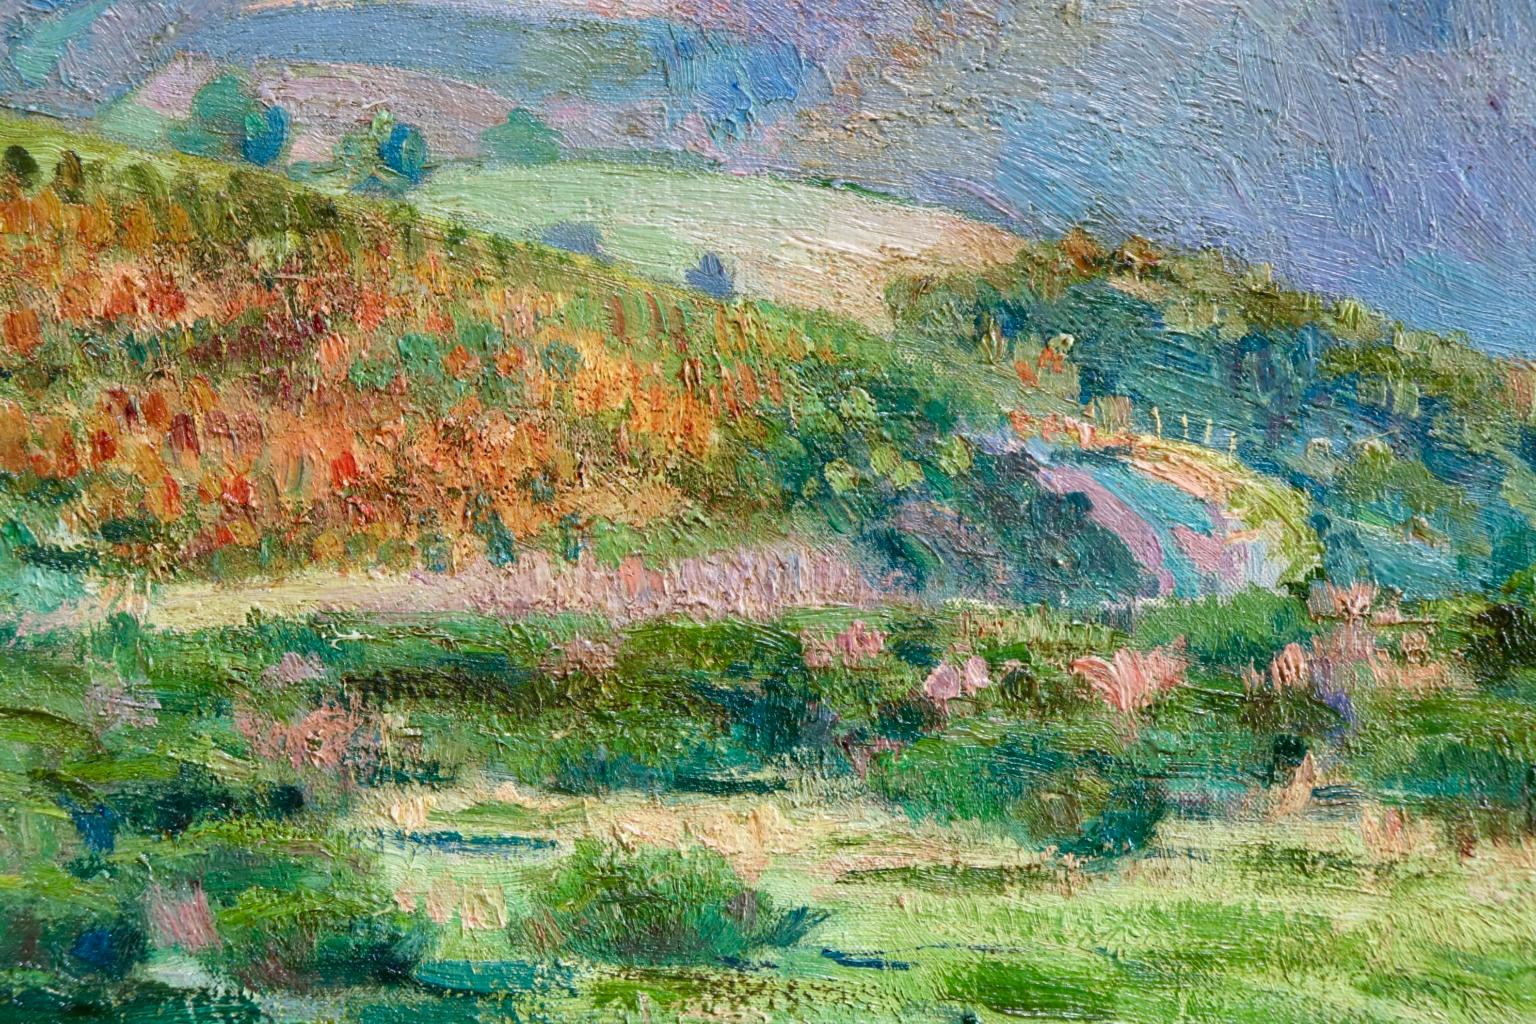 Donzy-le-Perthuis - Burgundy - Post Impressionist Oil, Landscape - H Petitjean 3